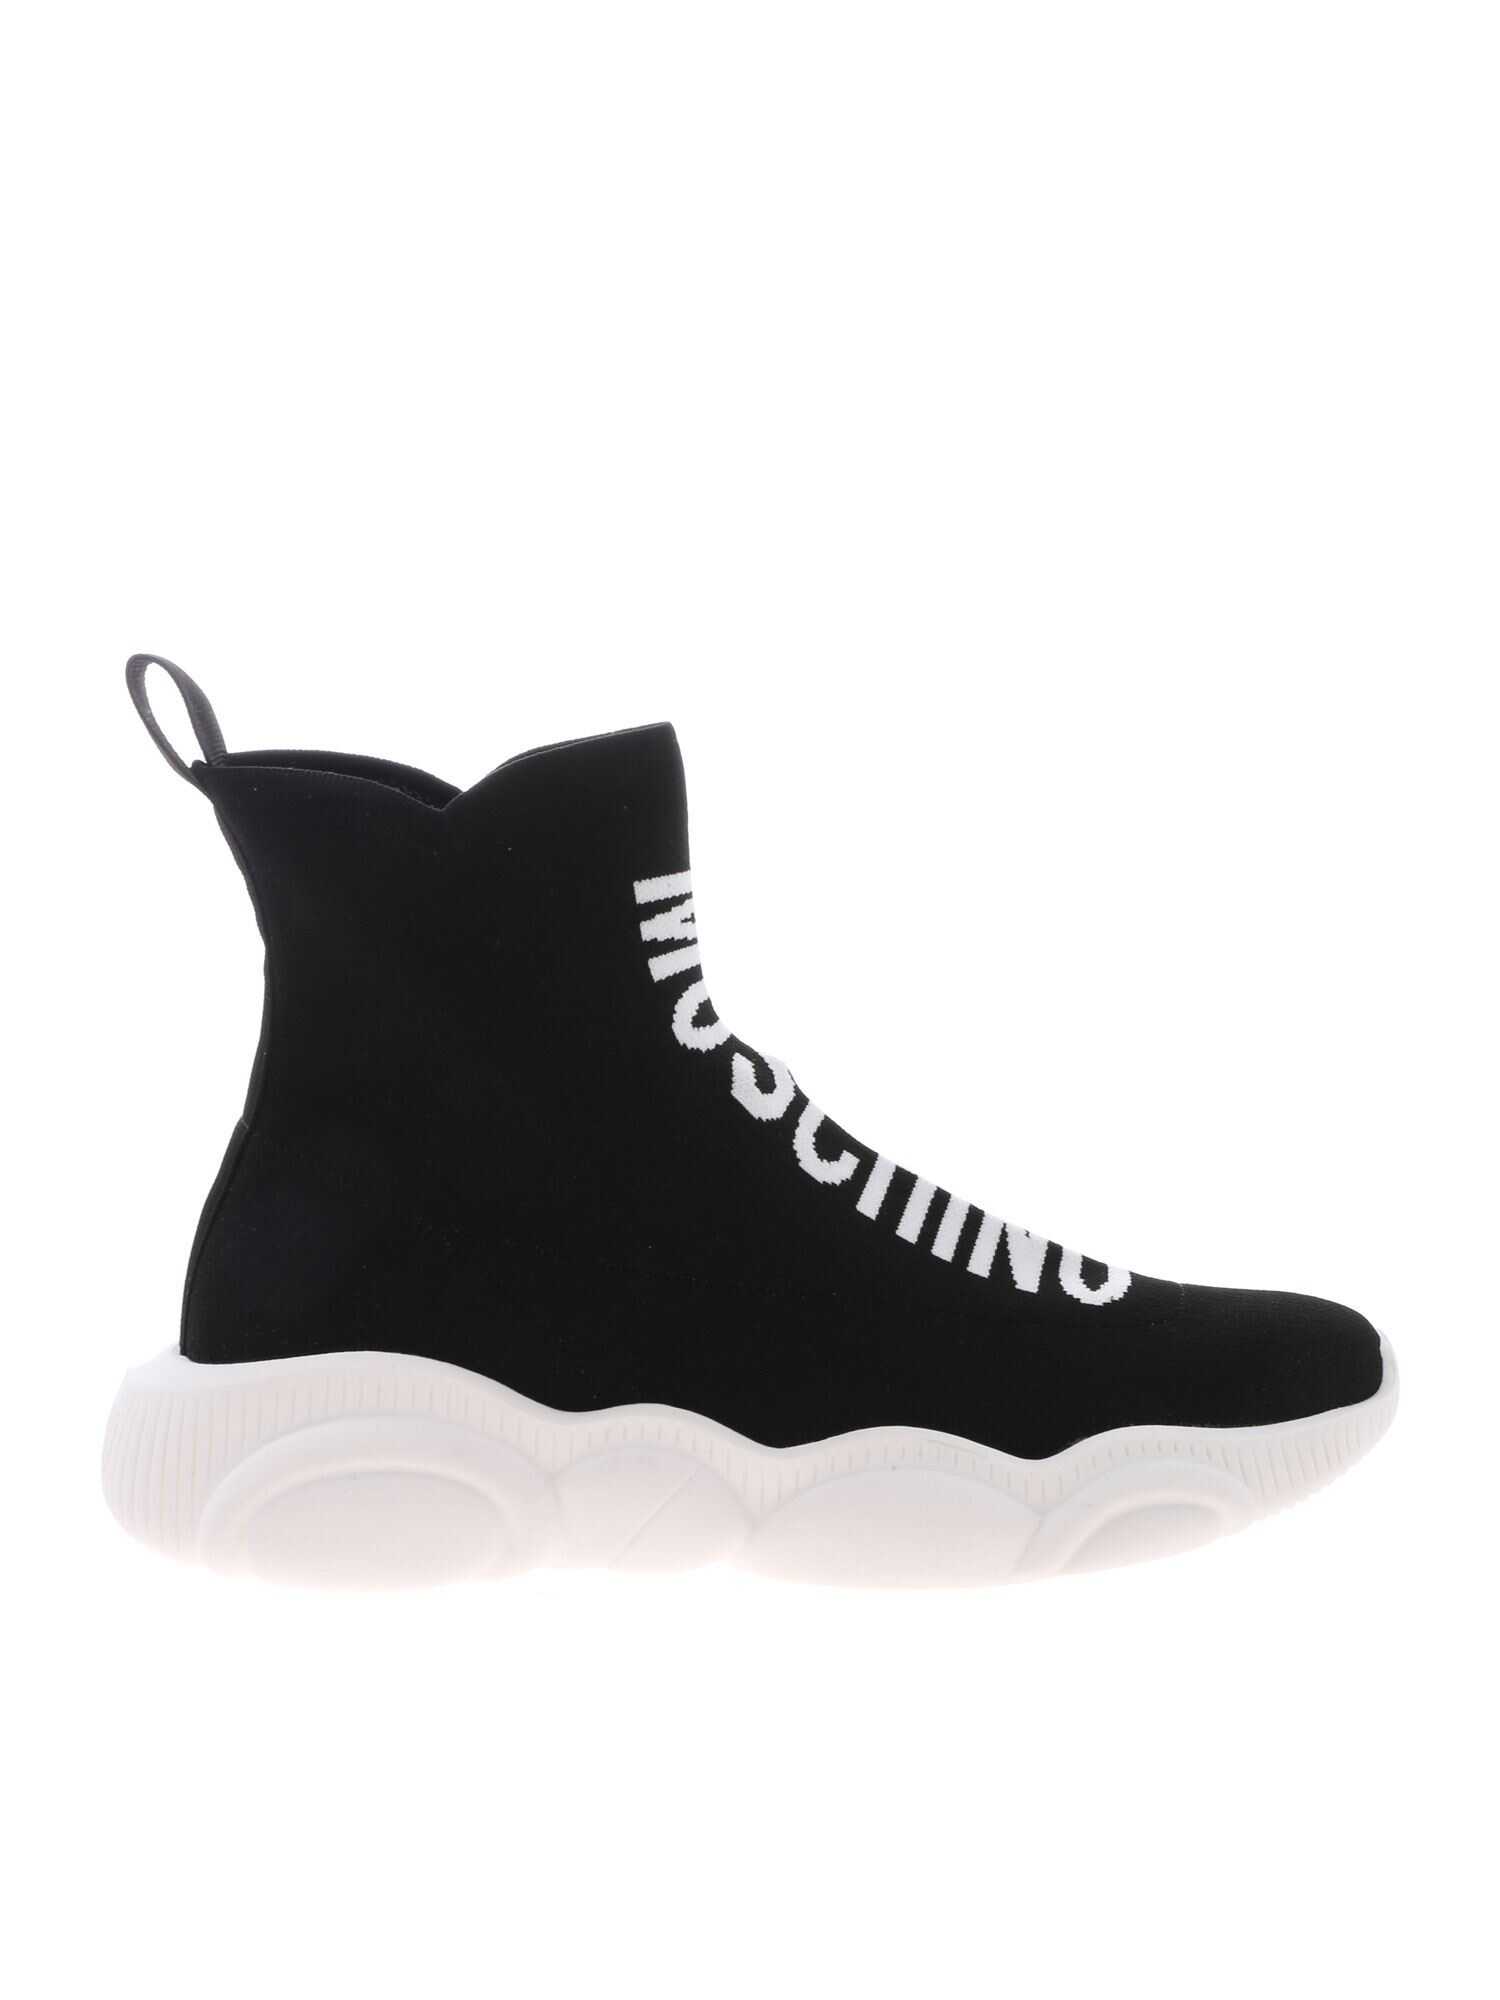 Moschino Socks High Sneakers NERO/BIANCO